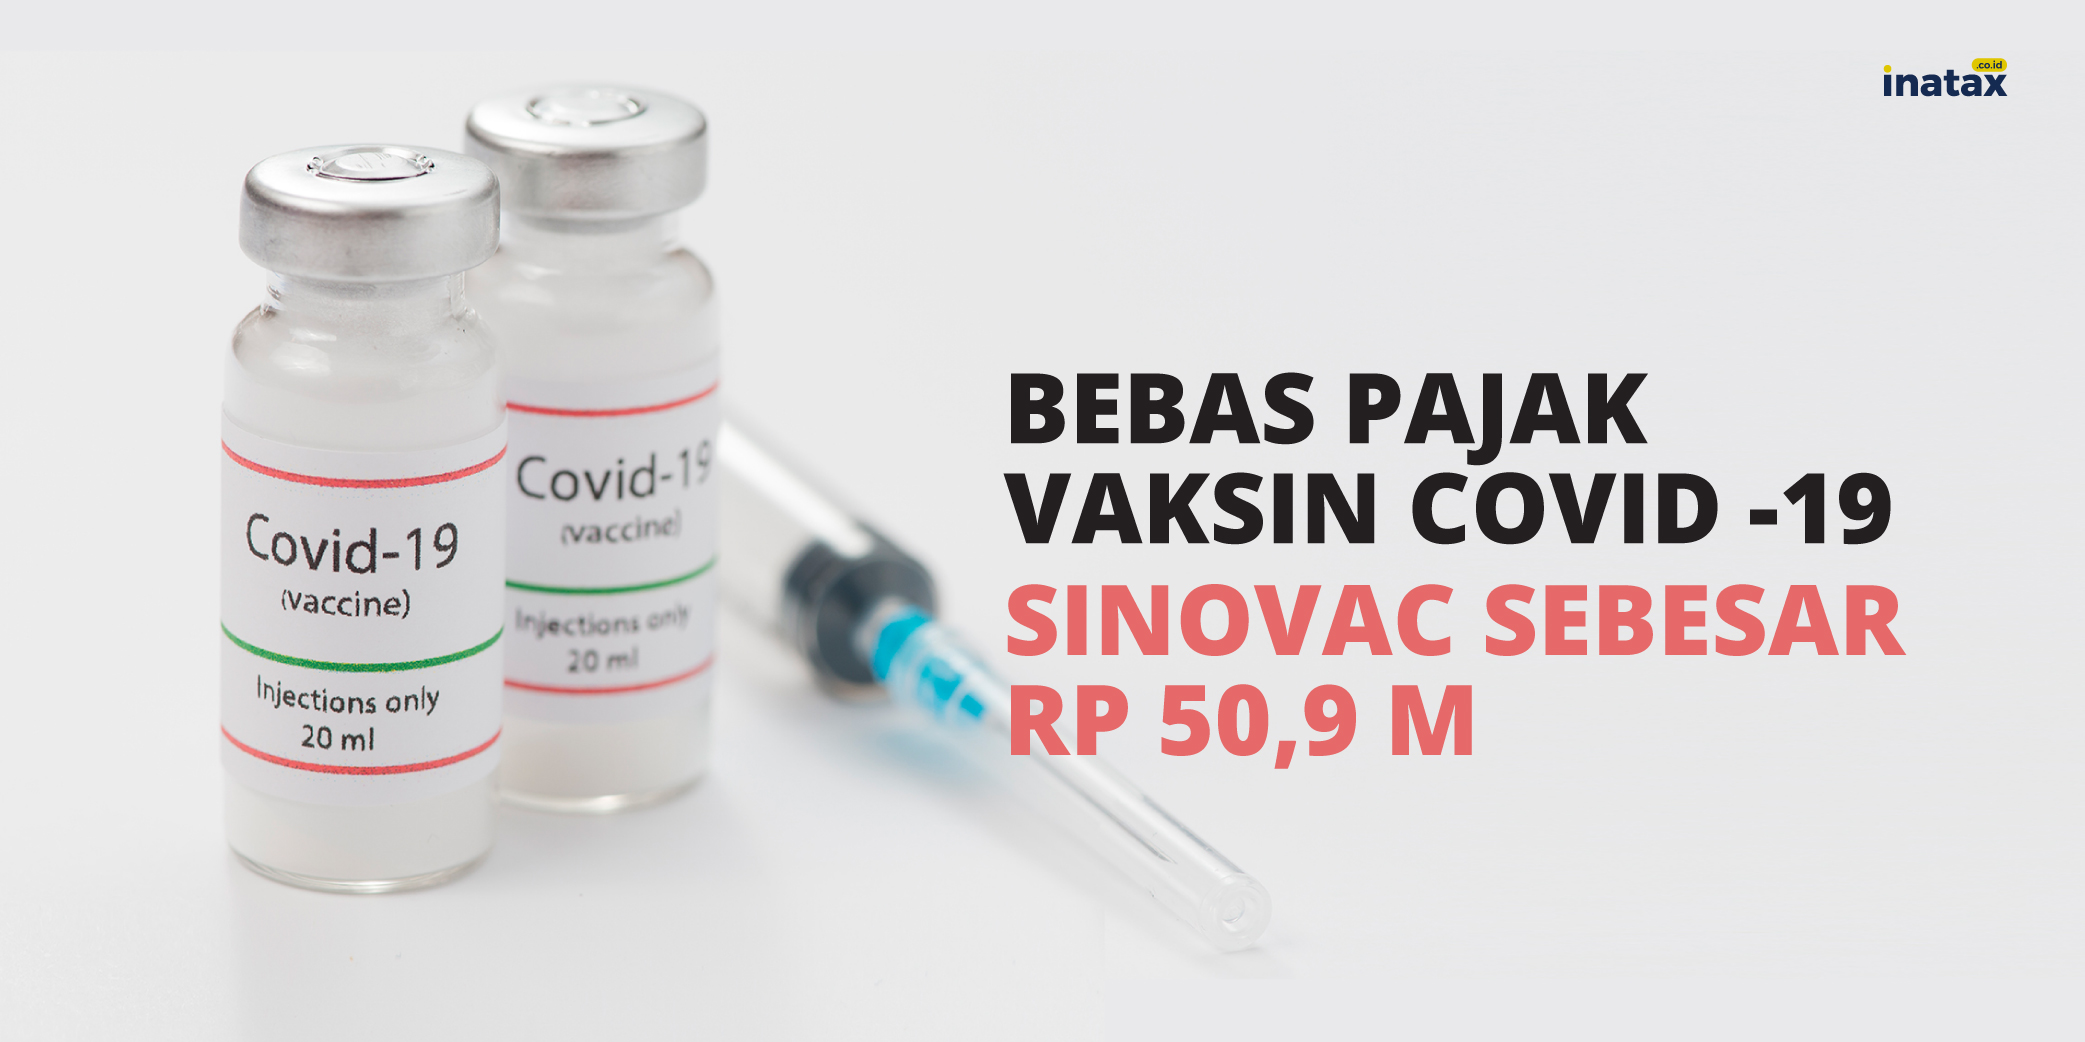 Kemenkeu Bebaskan Pajak Vaksin Covid -19 Sinovac Sebesar Rp 50,9 M